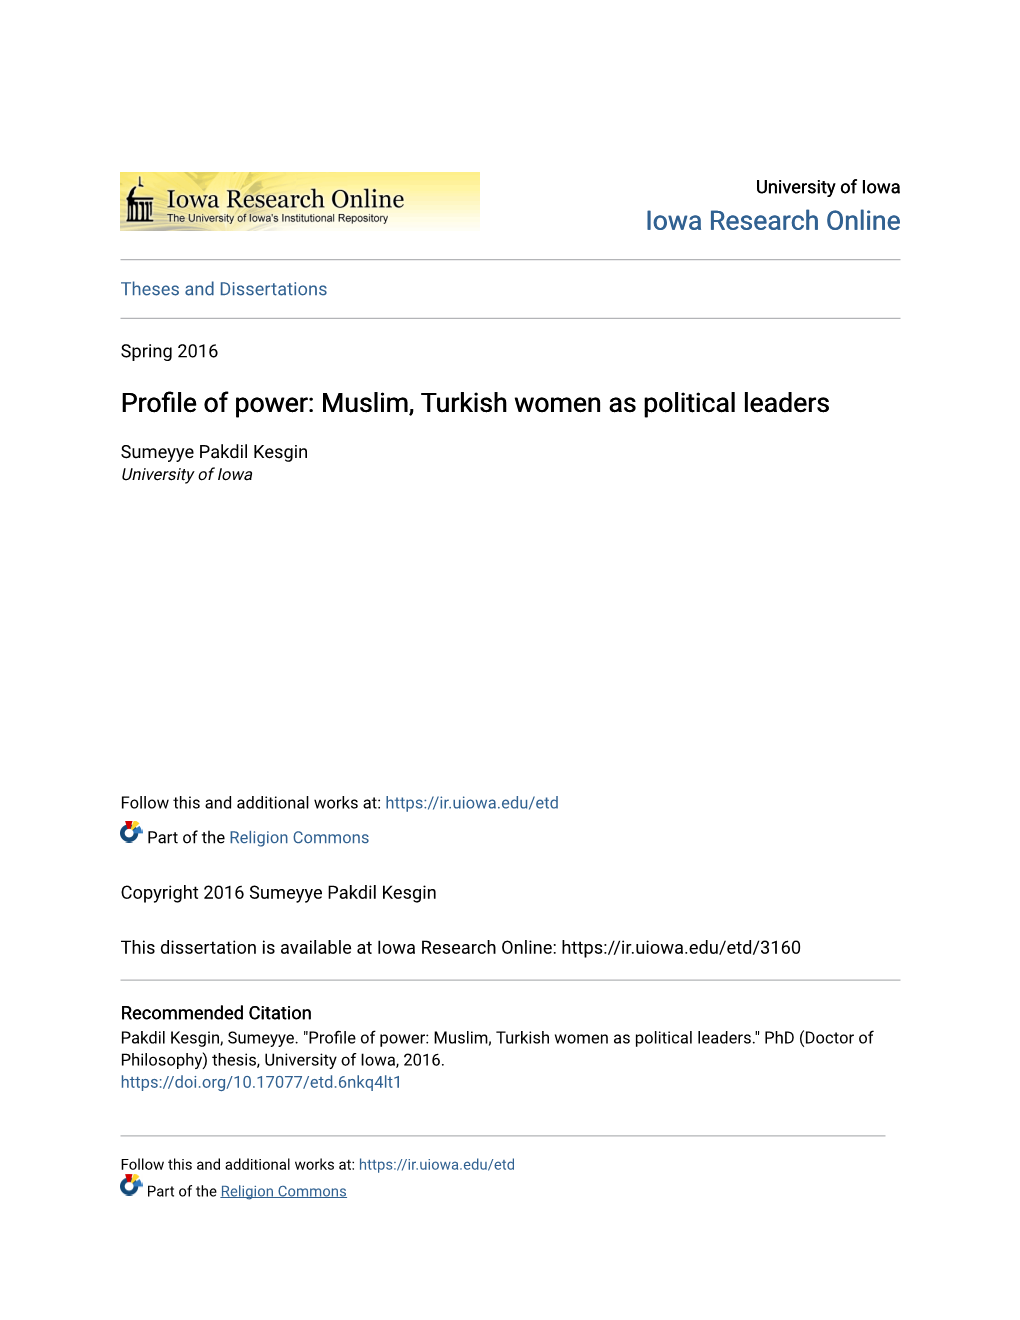 Muslim, Turkish Women As Political Leaders